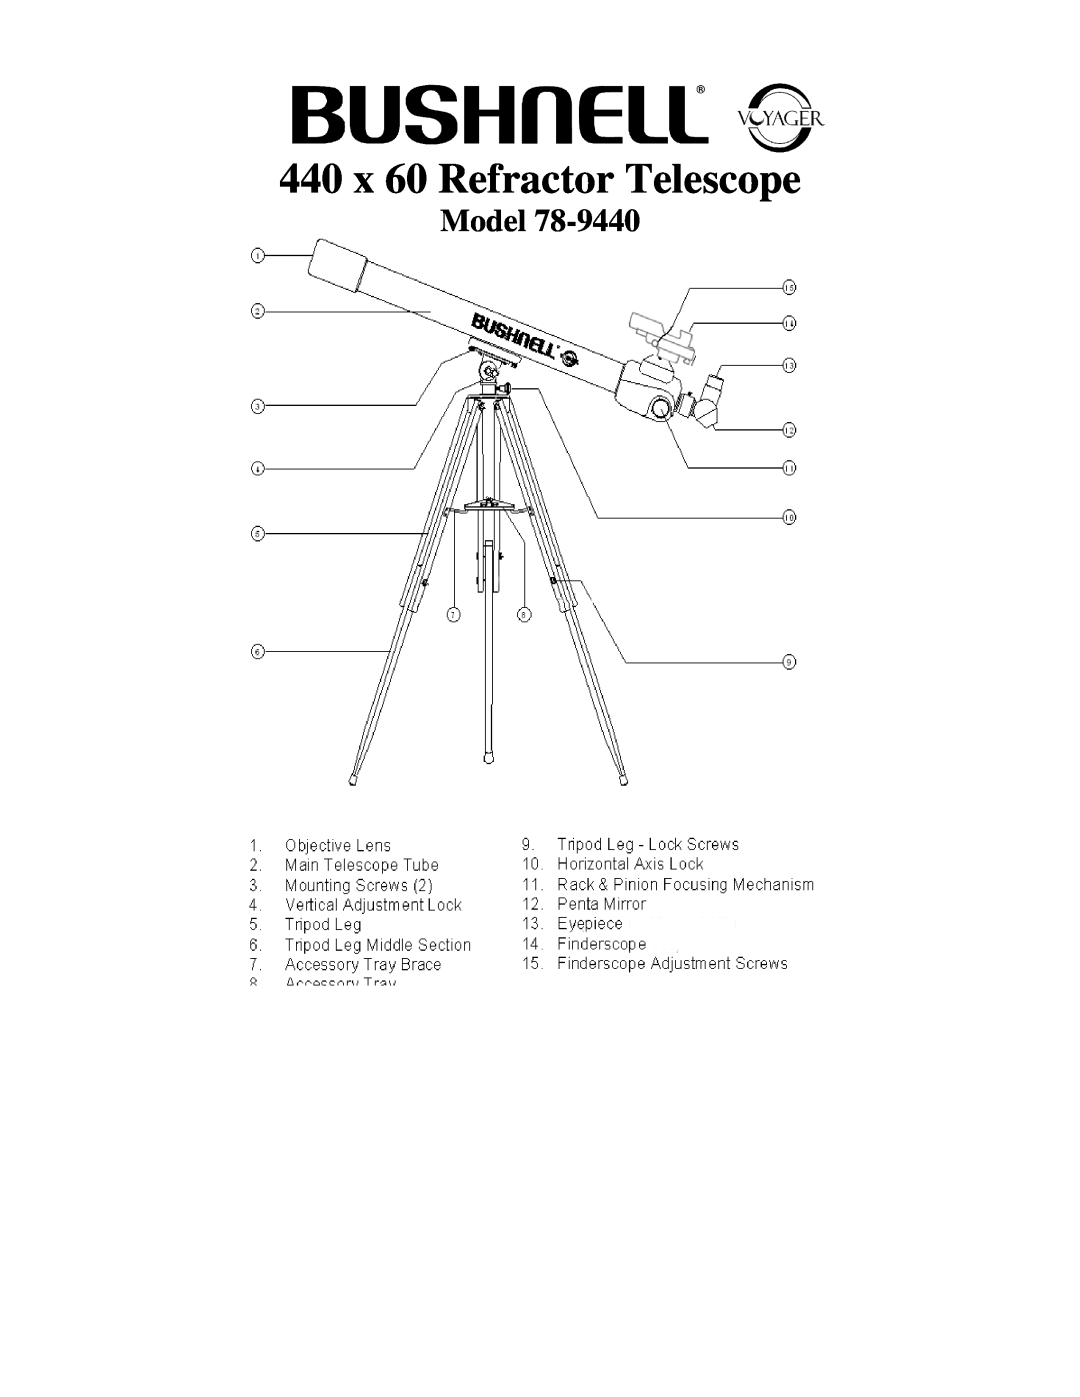 Bushnell 78-9440 manual 440 x 60 Refractor Telescope, Model 